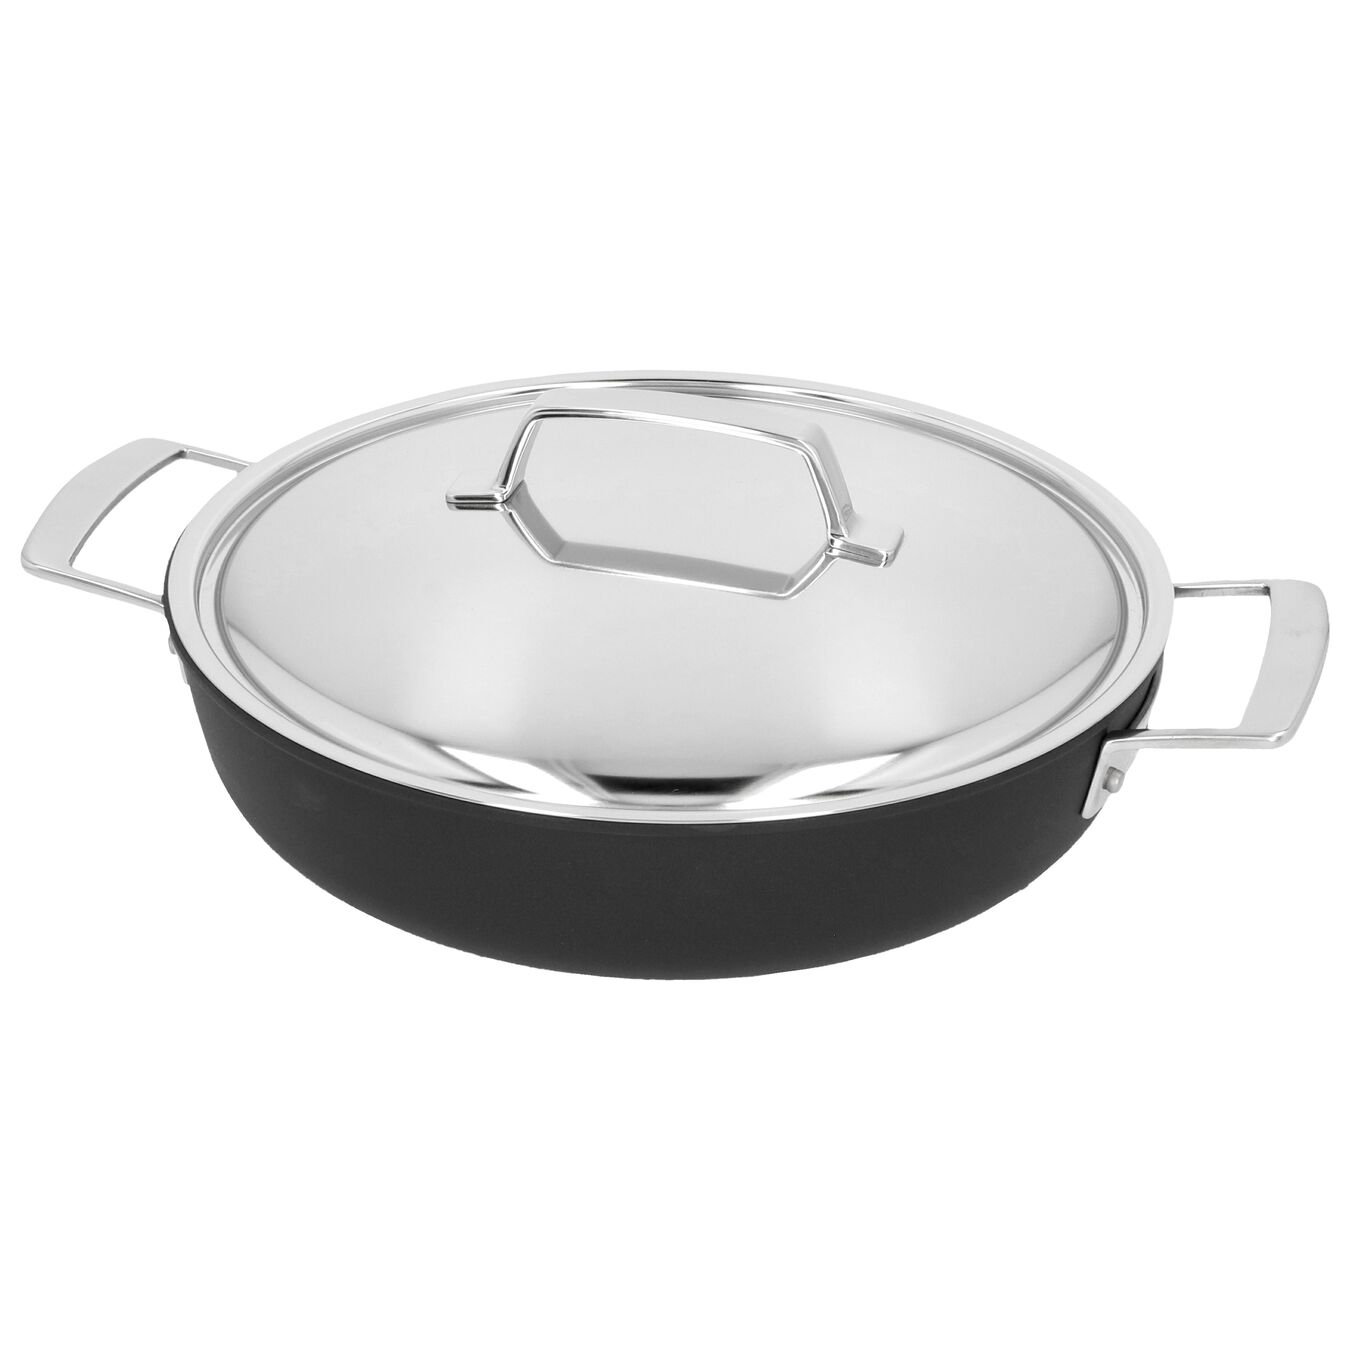 Buy Demeyere Alu Pro 5 Frying pan